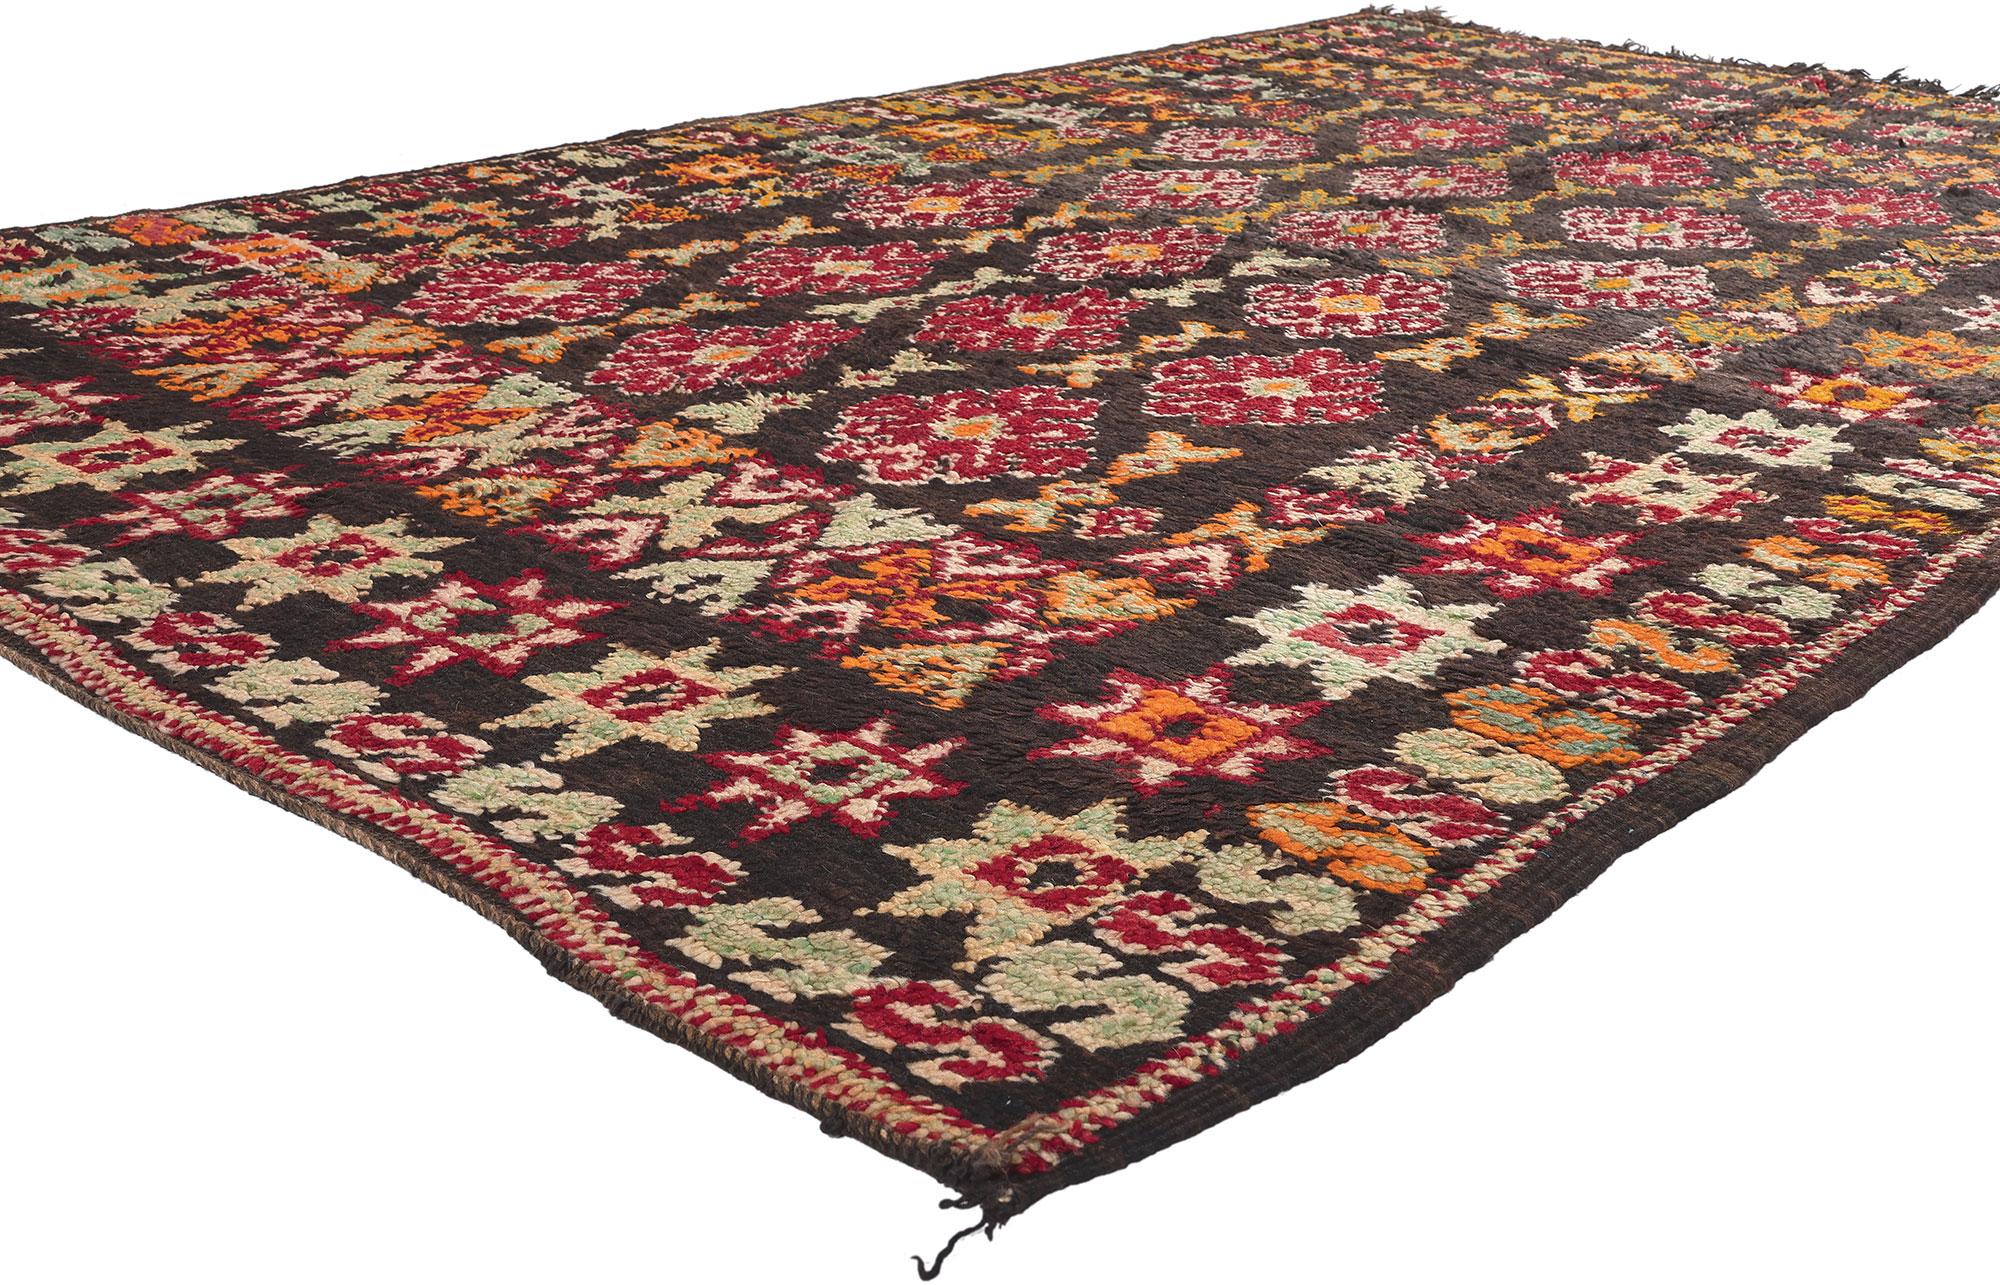 20722 Vintage Beni MGuild Marokkanischer Teppich, 06'00 x 09'00. Entdecken Sie in der bezaubernden Konvergenz von Midcentury Modern und nomadischem Charme die Faszination dieses handgeknüpften marokkanischen Beni Mguild-Teppichs aus Wolle - ein